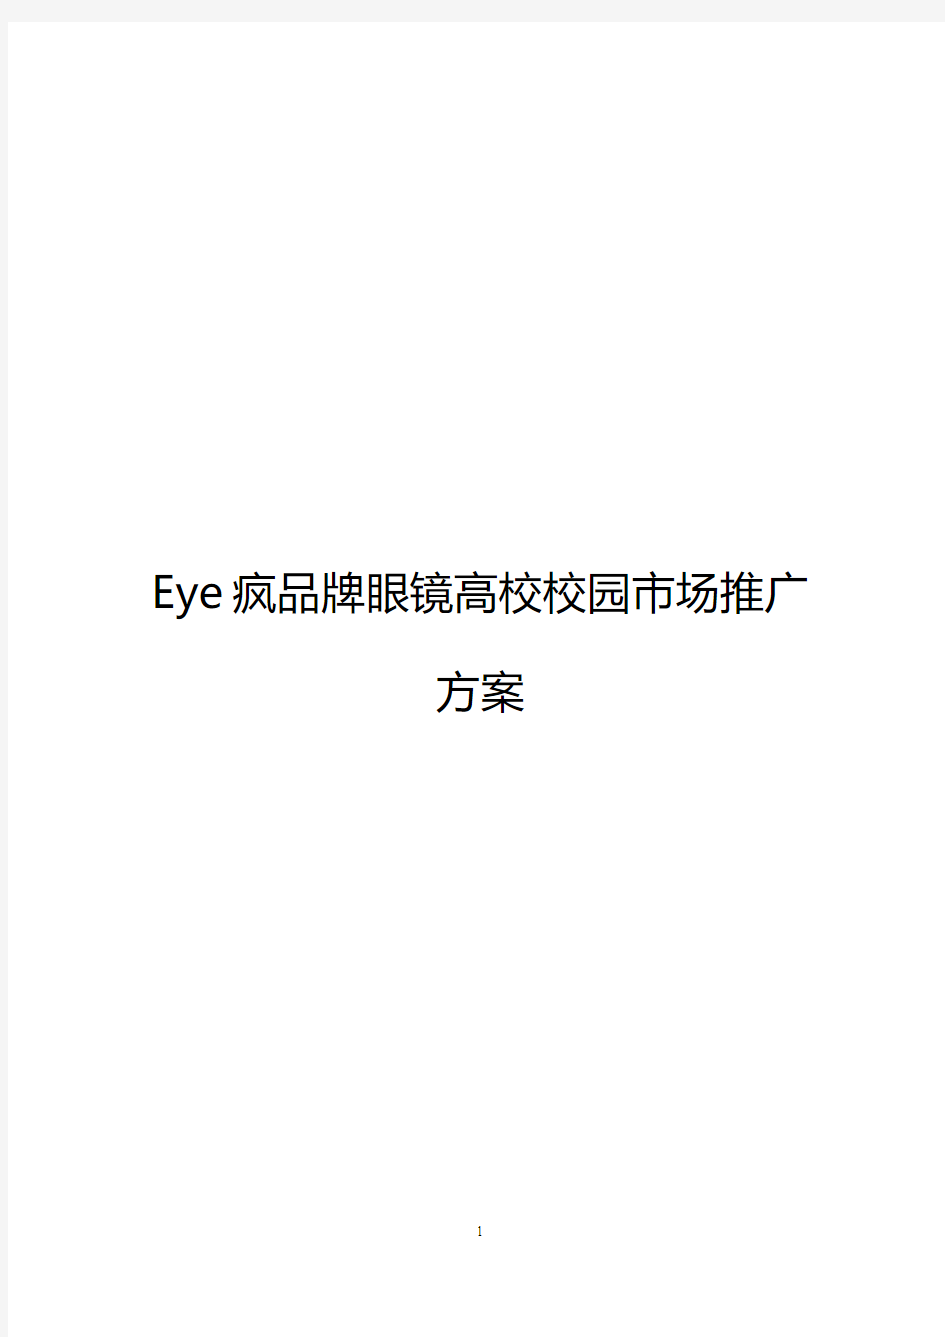 【完稿】Eye疯连锁品牌眼镜店高校校园市场推广营销策划方案